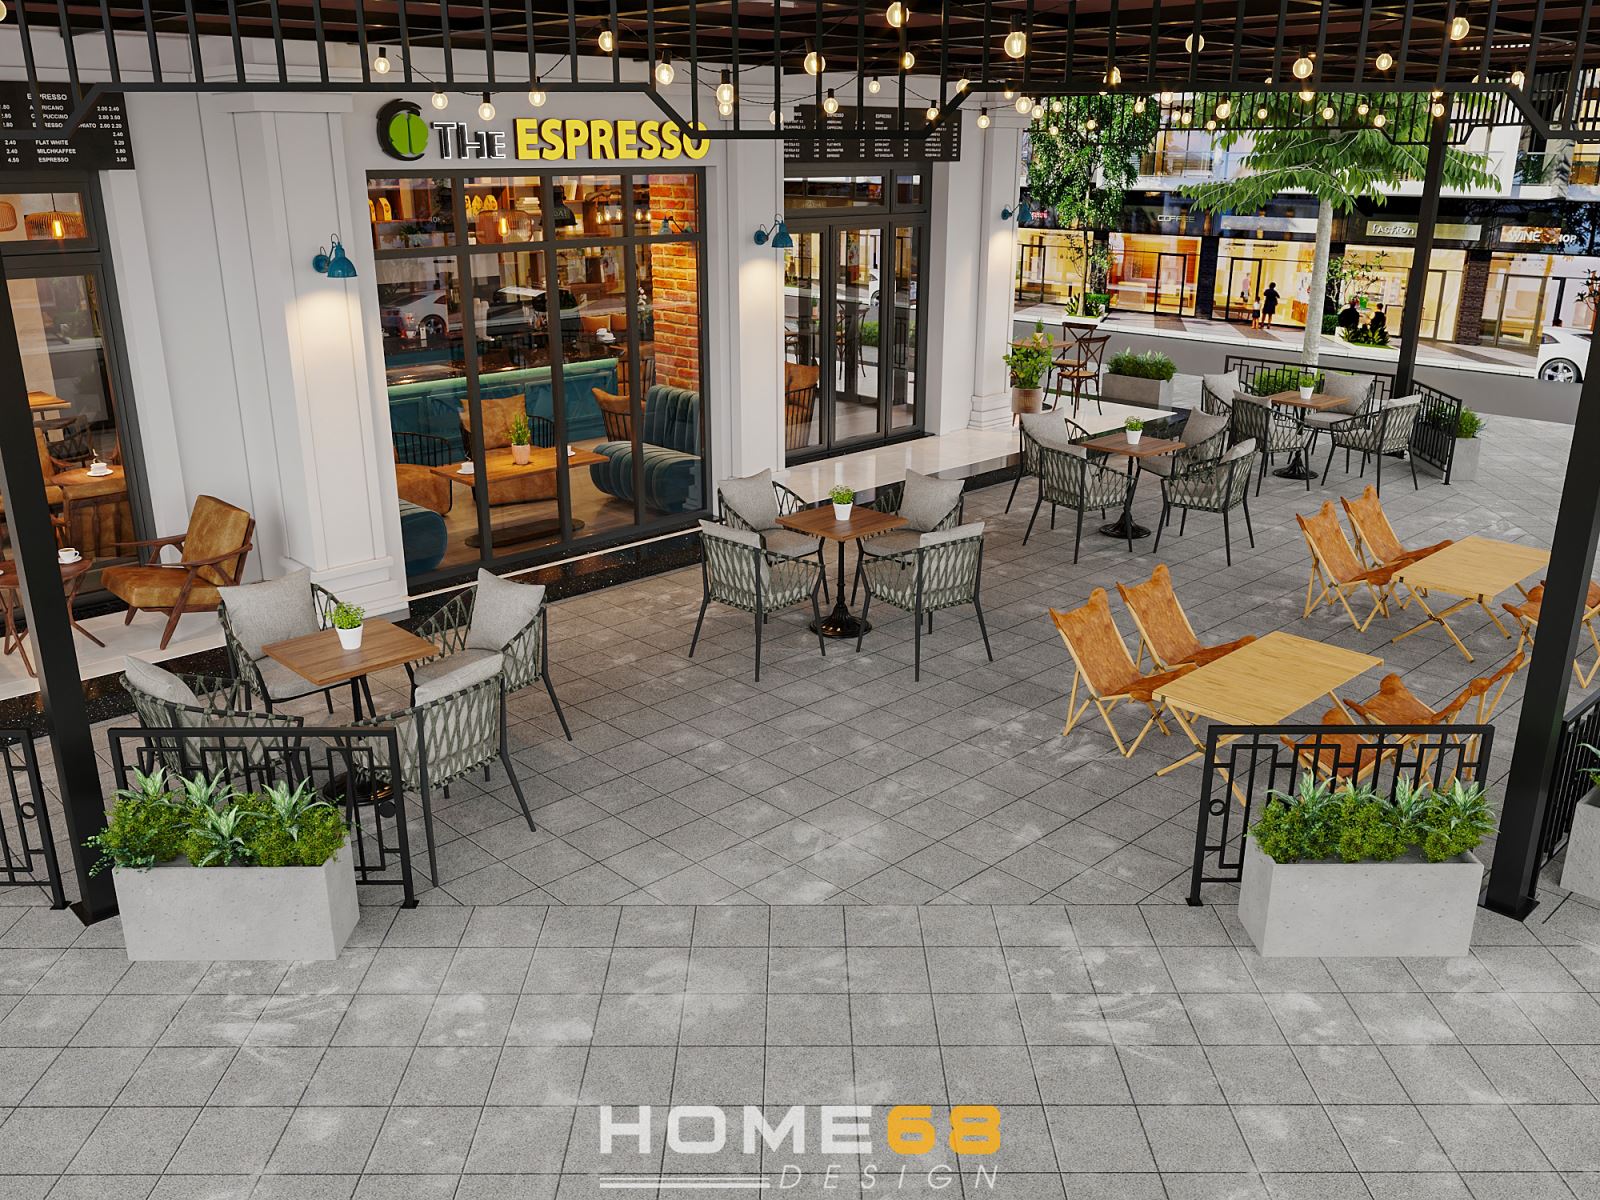 HOME68 đã thiết kế phía bên ngoài quán cafe với không gian trong lành, thư giãn 